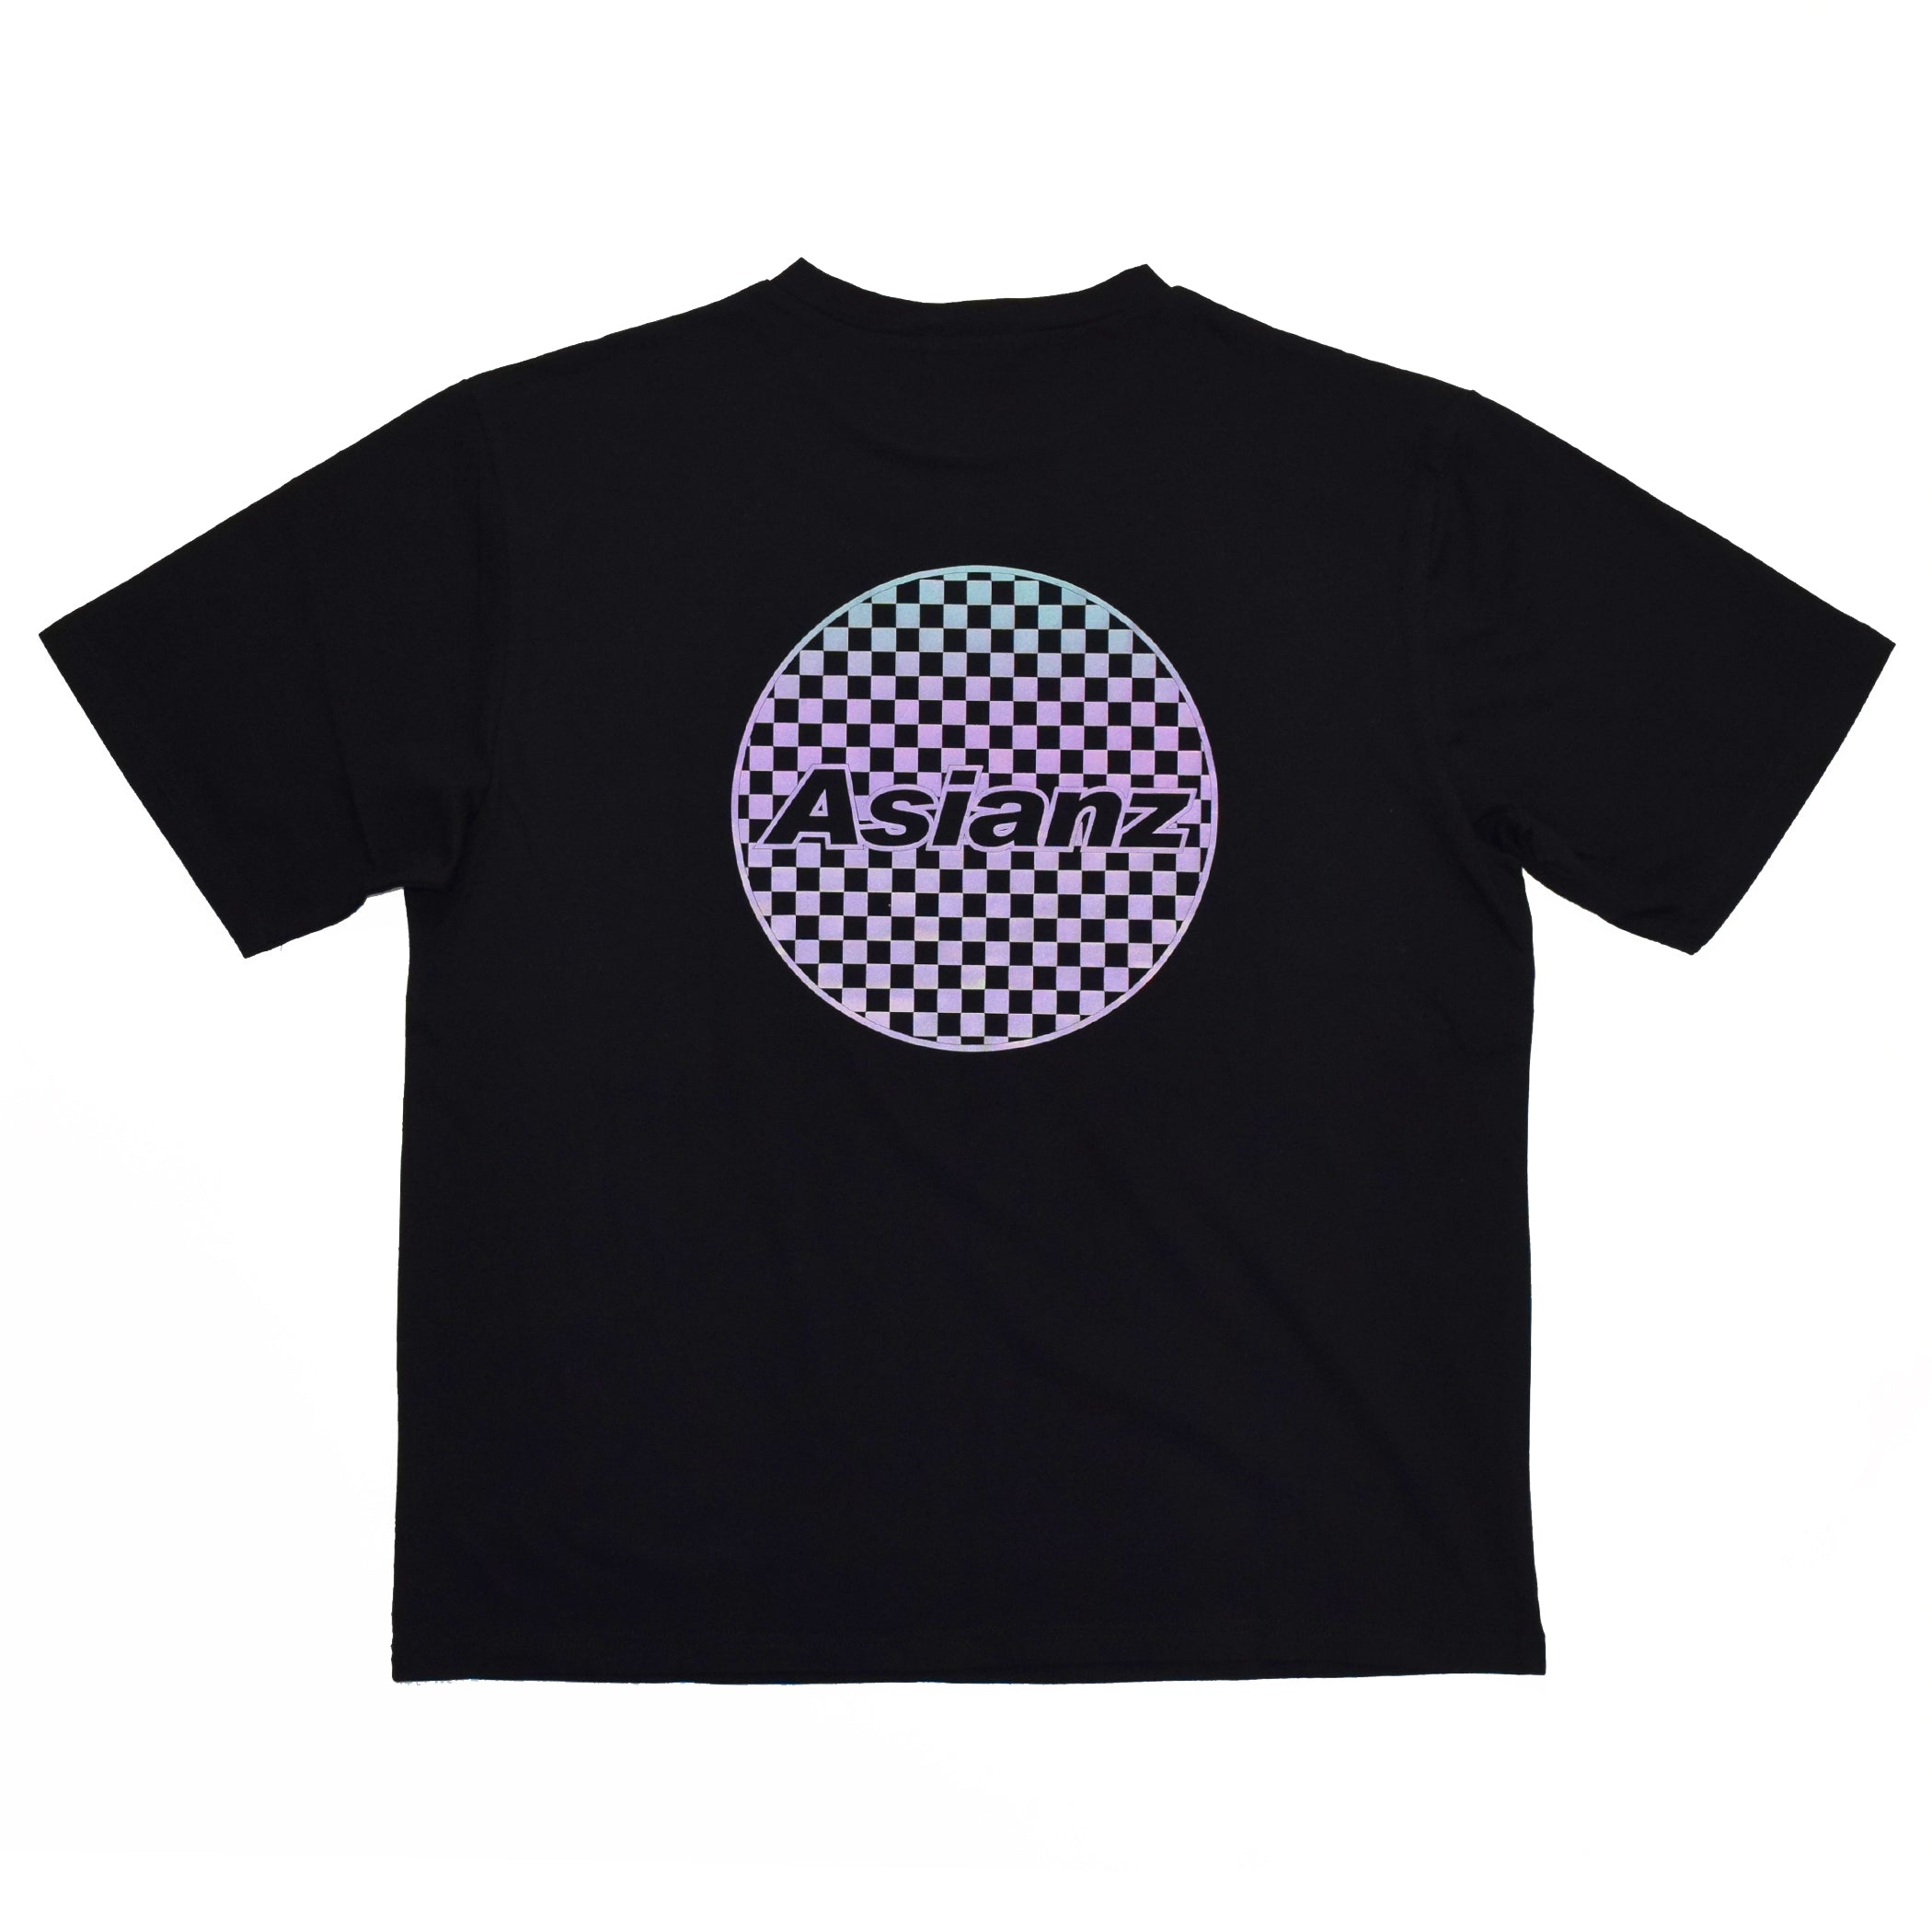 (セール商品) ASIANZ リフレクターロゴ T-シャツ